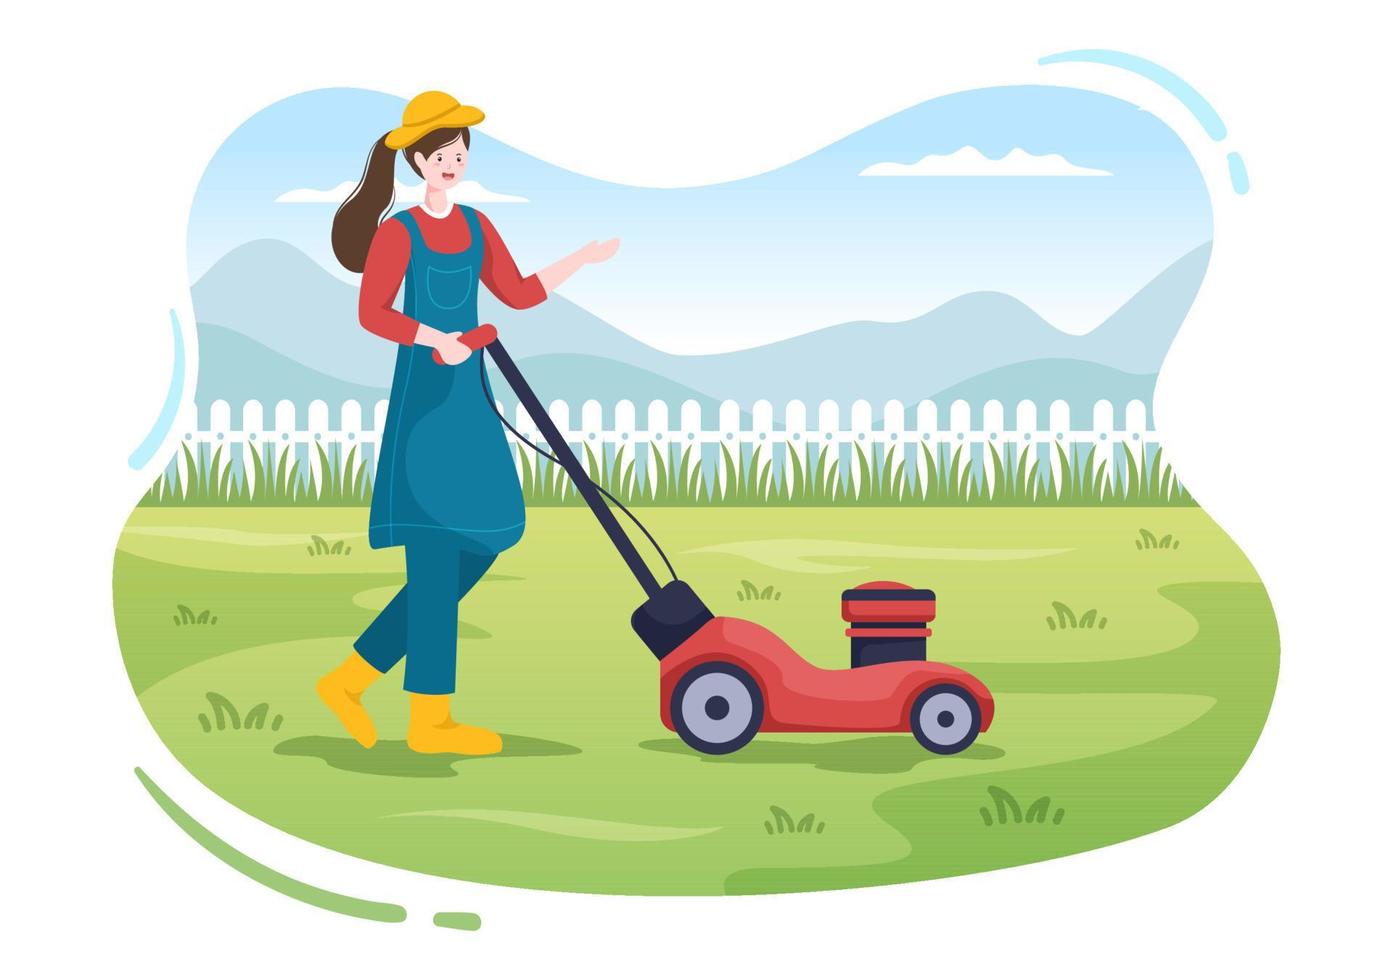 cortador de grama cortando grama verde, aparando e cuidando na página ou jardim na ilustração plana dos desenhos animados vetor